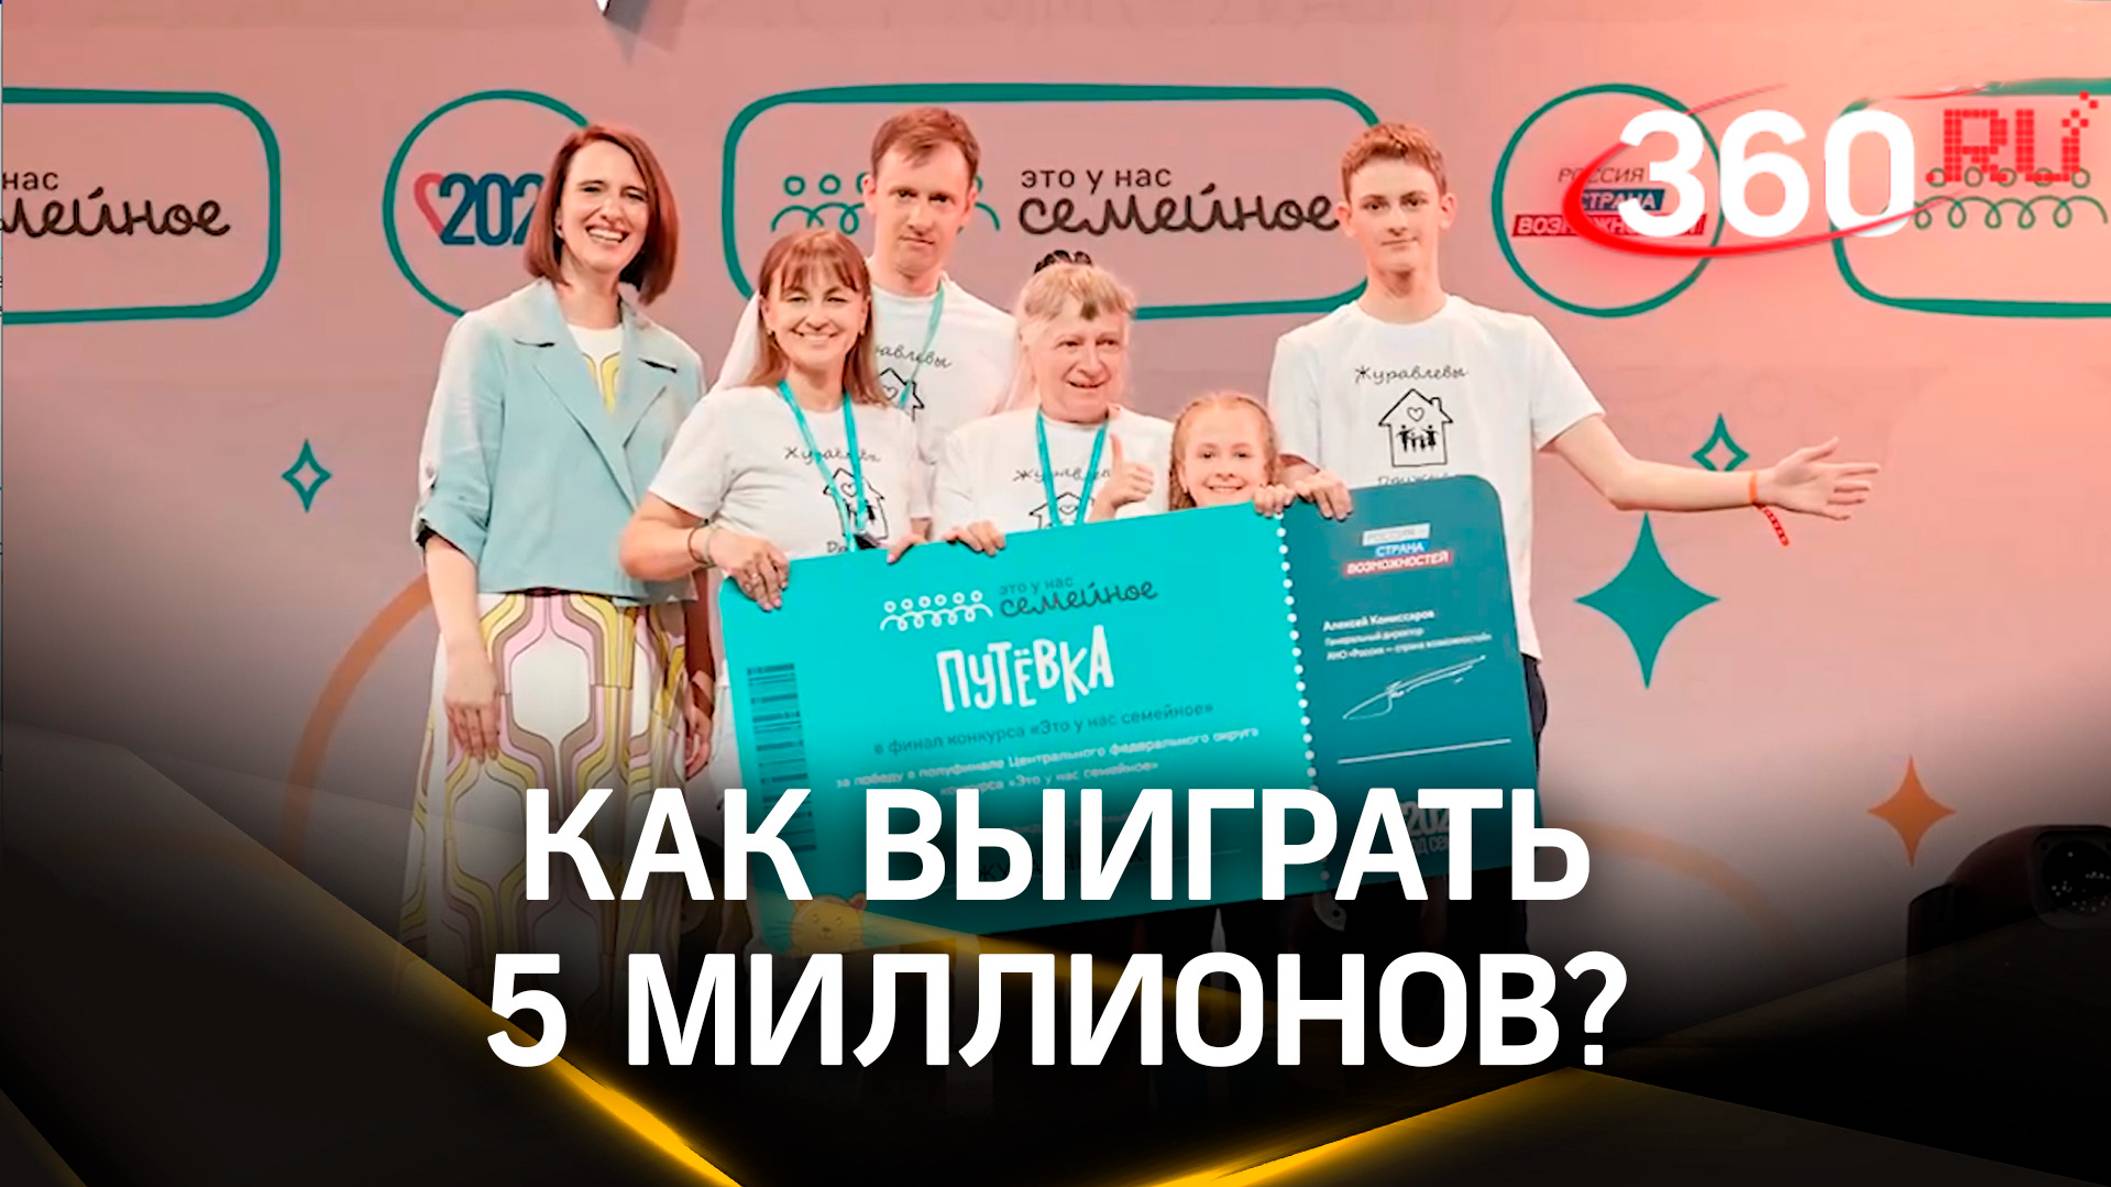 Секрет успеха: семья из Подмосковья в финале Всероссийского конкурса «Это у нас семейное»